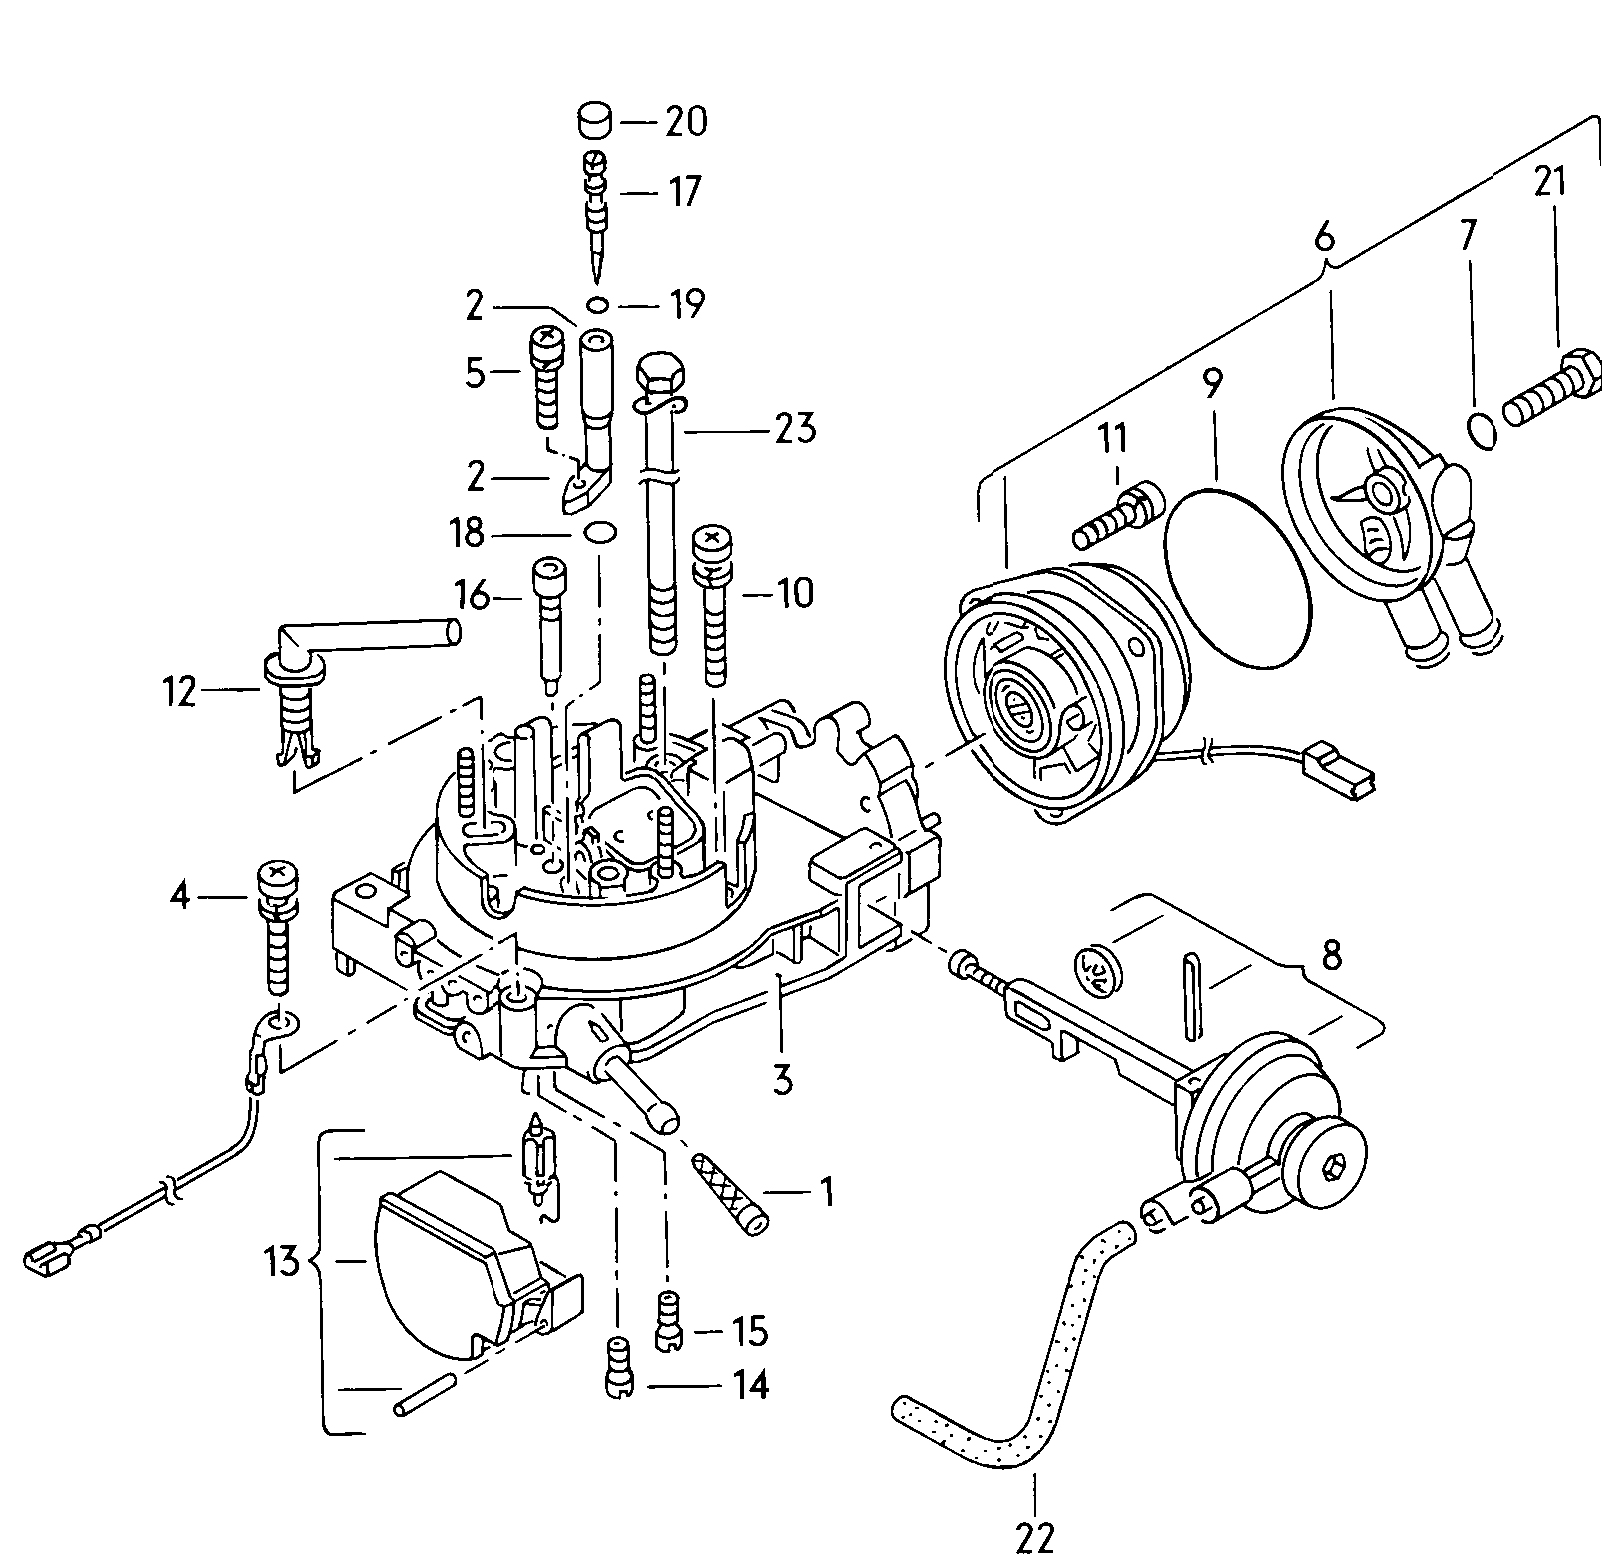 Carburateurp. vehicules reequipes dun<br>systeme depuration des gaz a<br>regulation lambda 1,8l - Audi 100/Avant - a100